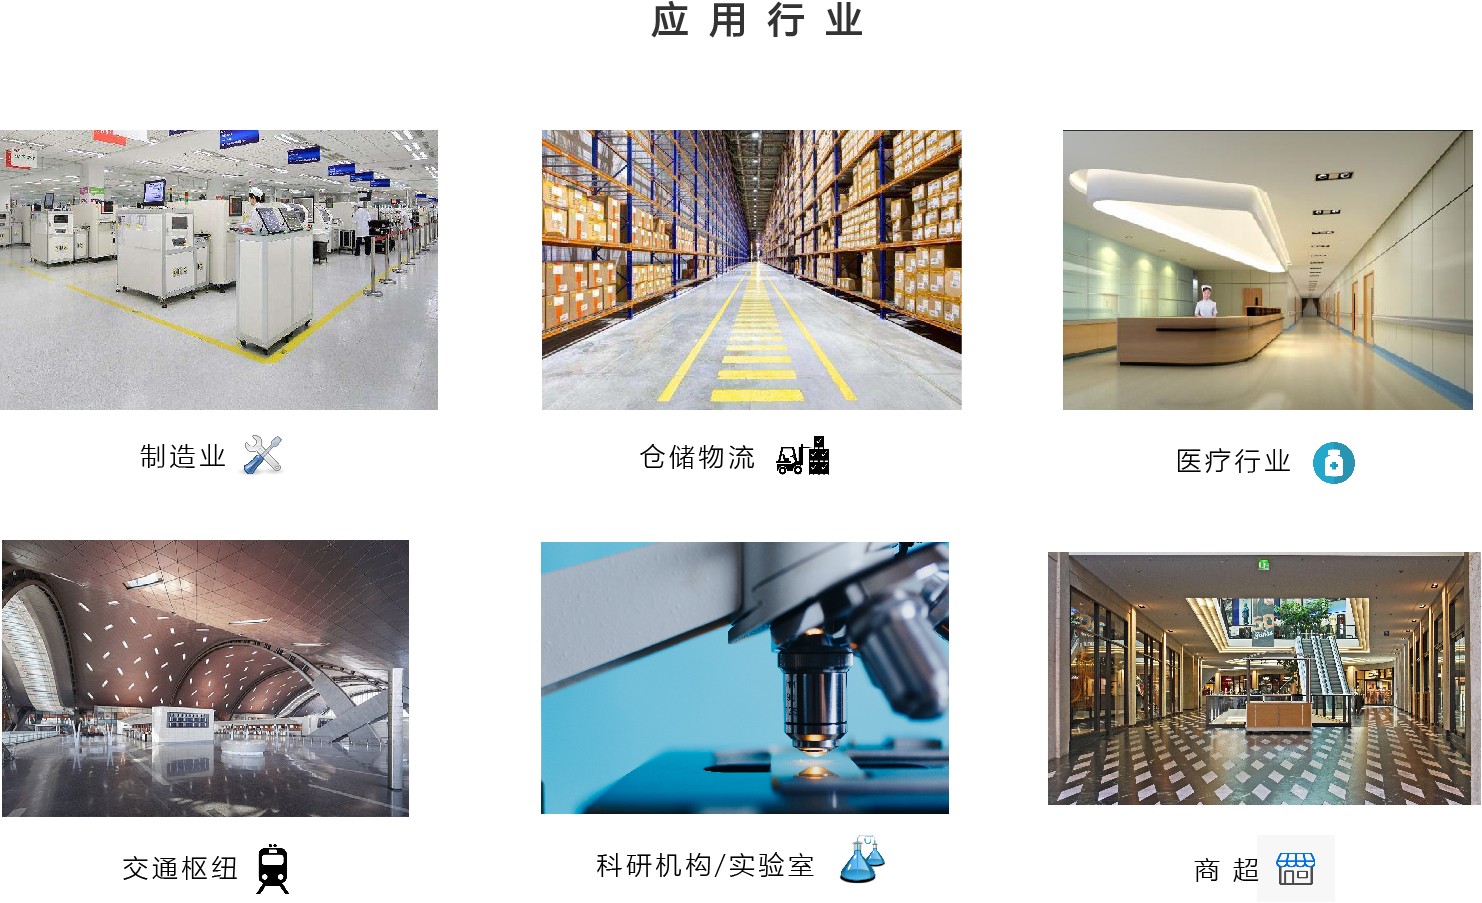 关于当前产品21点梭哈·(中国)官方网站的成功案例等相关图片